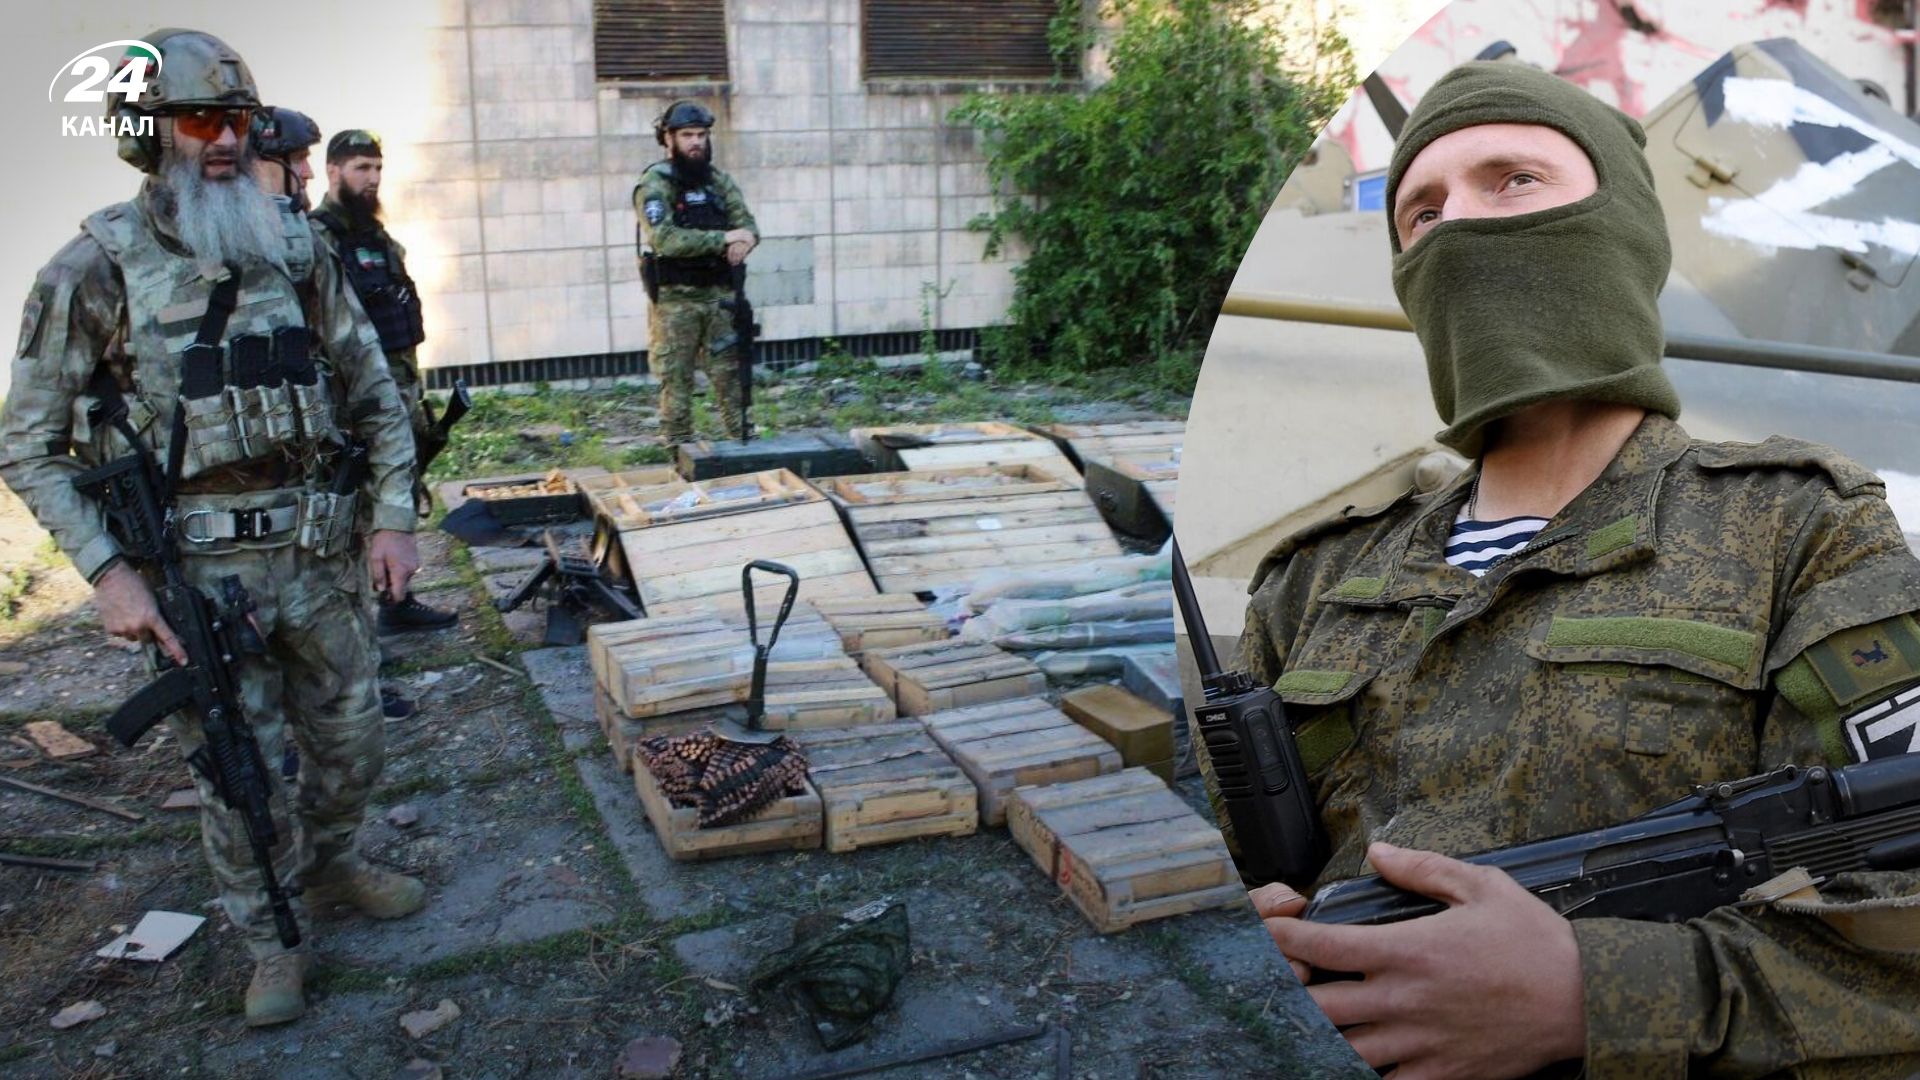 Кадыровцы обвиняются в изнасиловании - они лишили чести военных из "ДНР"